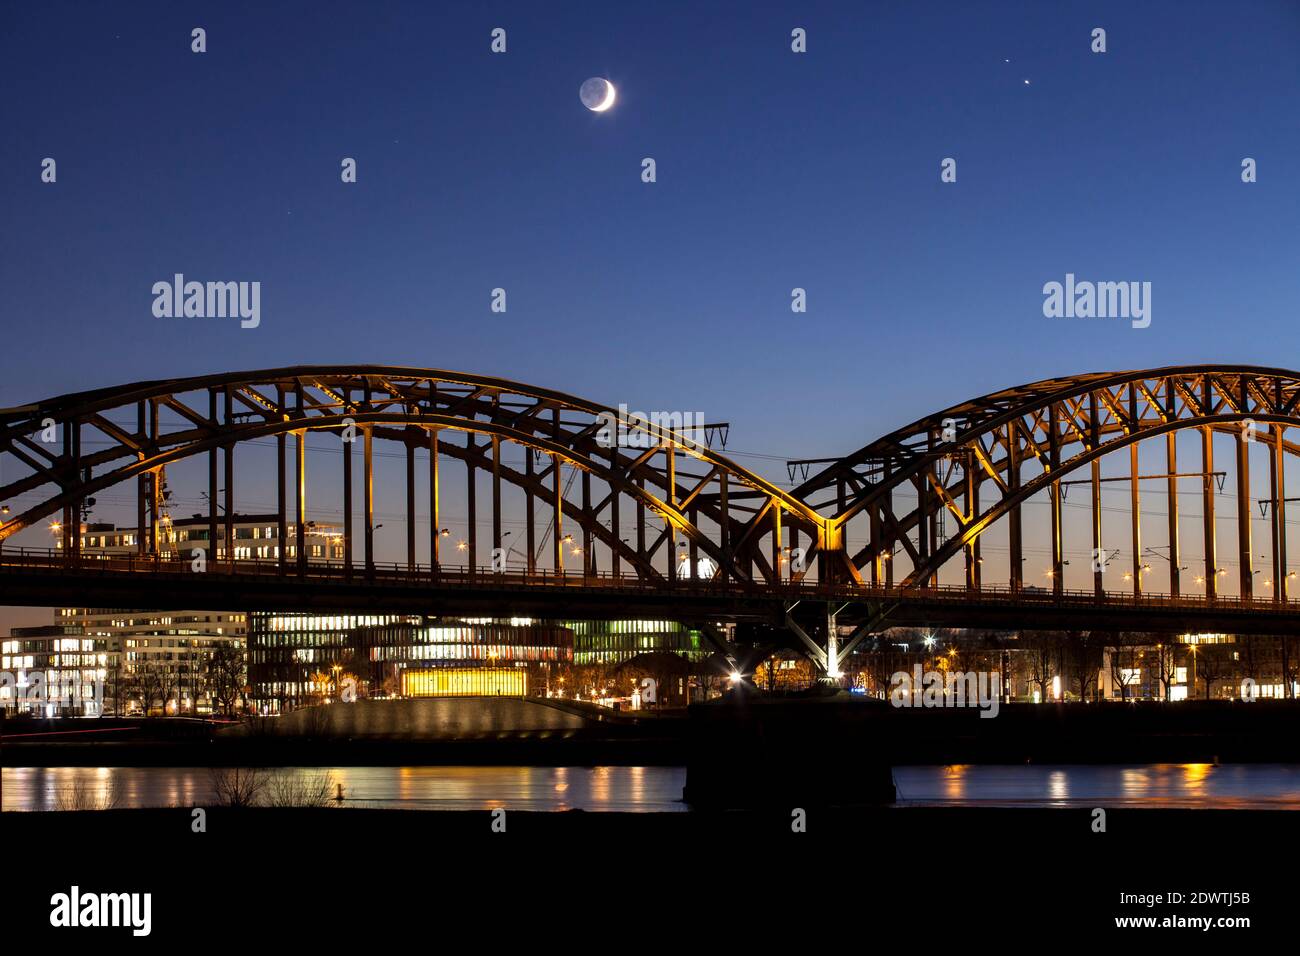 Die Südbrücke, Eisenbahnbrücke über den Rhein, den Mond und die Planeten Jupiter und Saturn wenige Tage vor der "Großen Konjunktion" am 21.12. Stockfoto